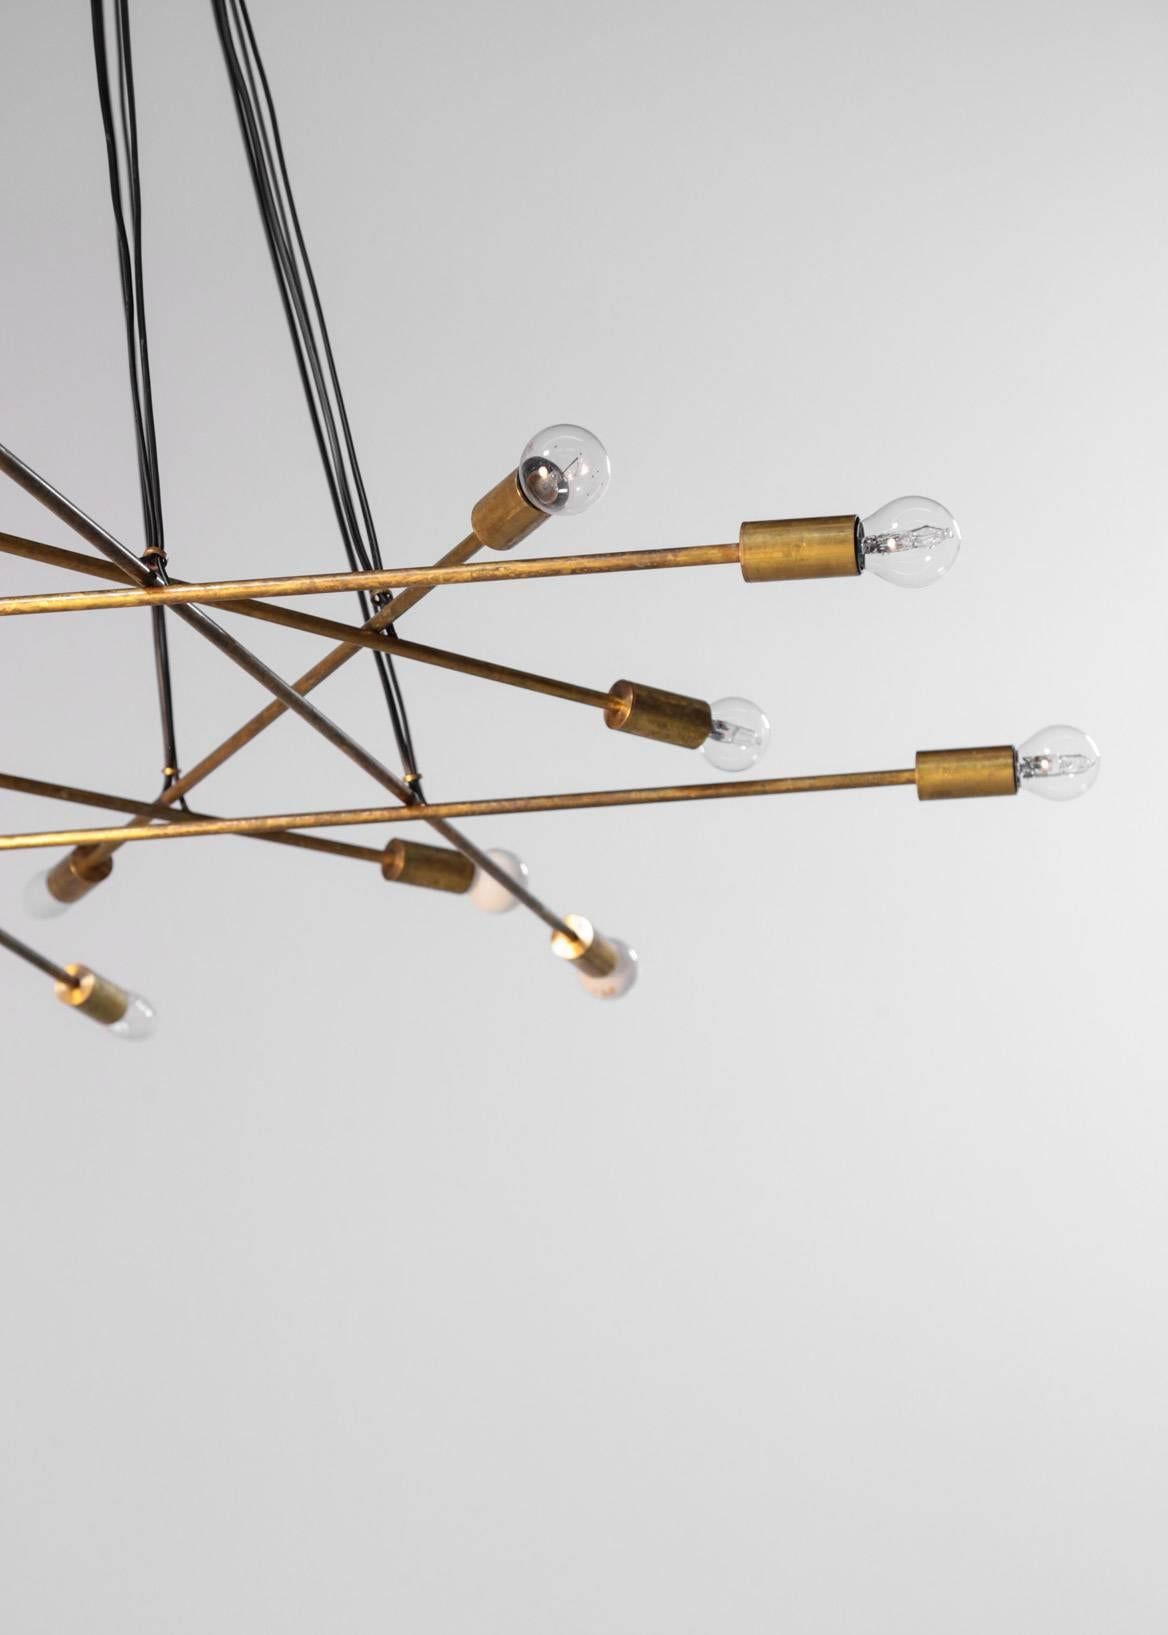 Magnifique pendentif/chandelier moderne de style Gino Sarfatti, structure composée de huit bras en laiton, deux lumières sur chacun d'eux.
Seize lumières, ampoule E14.